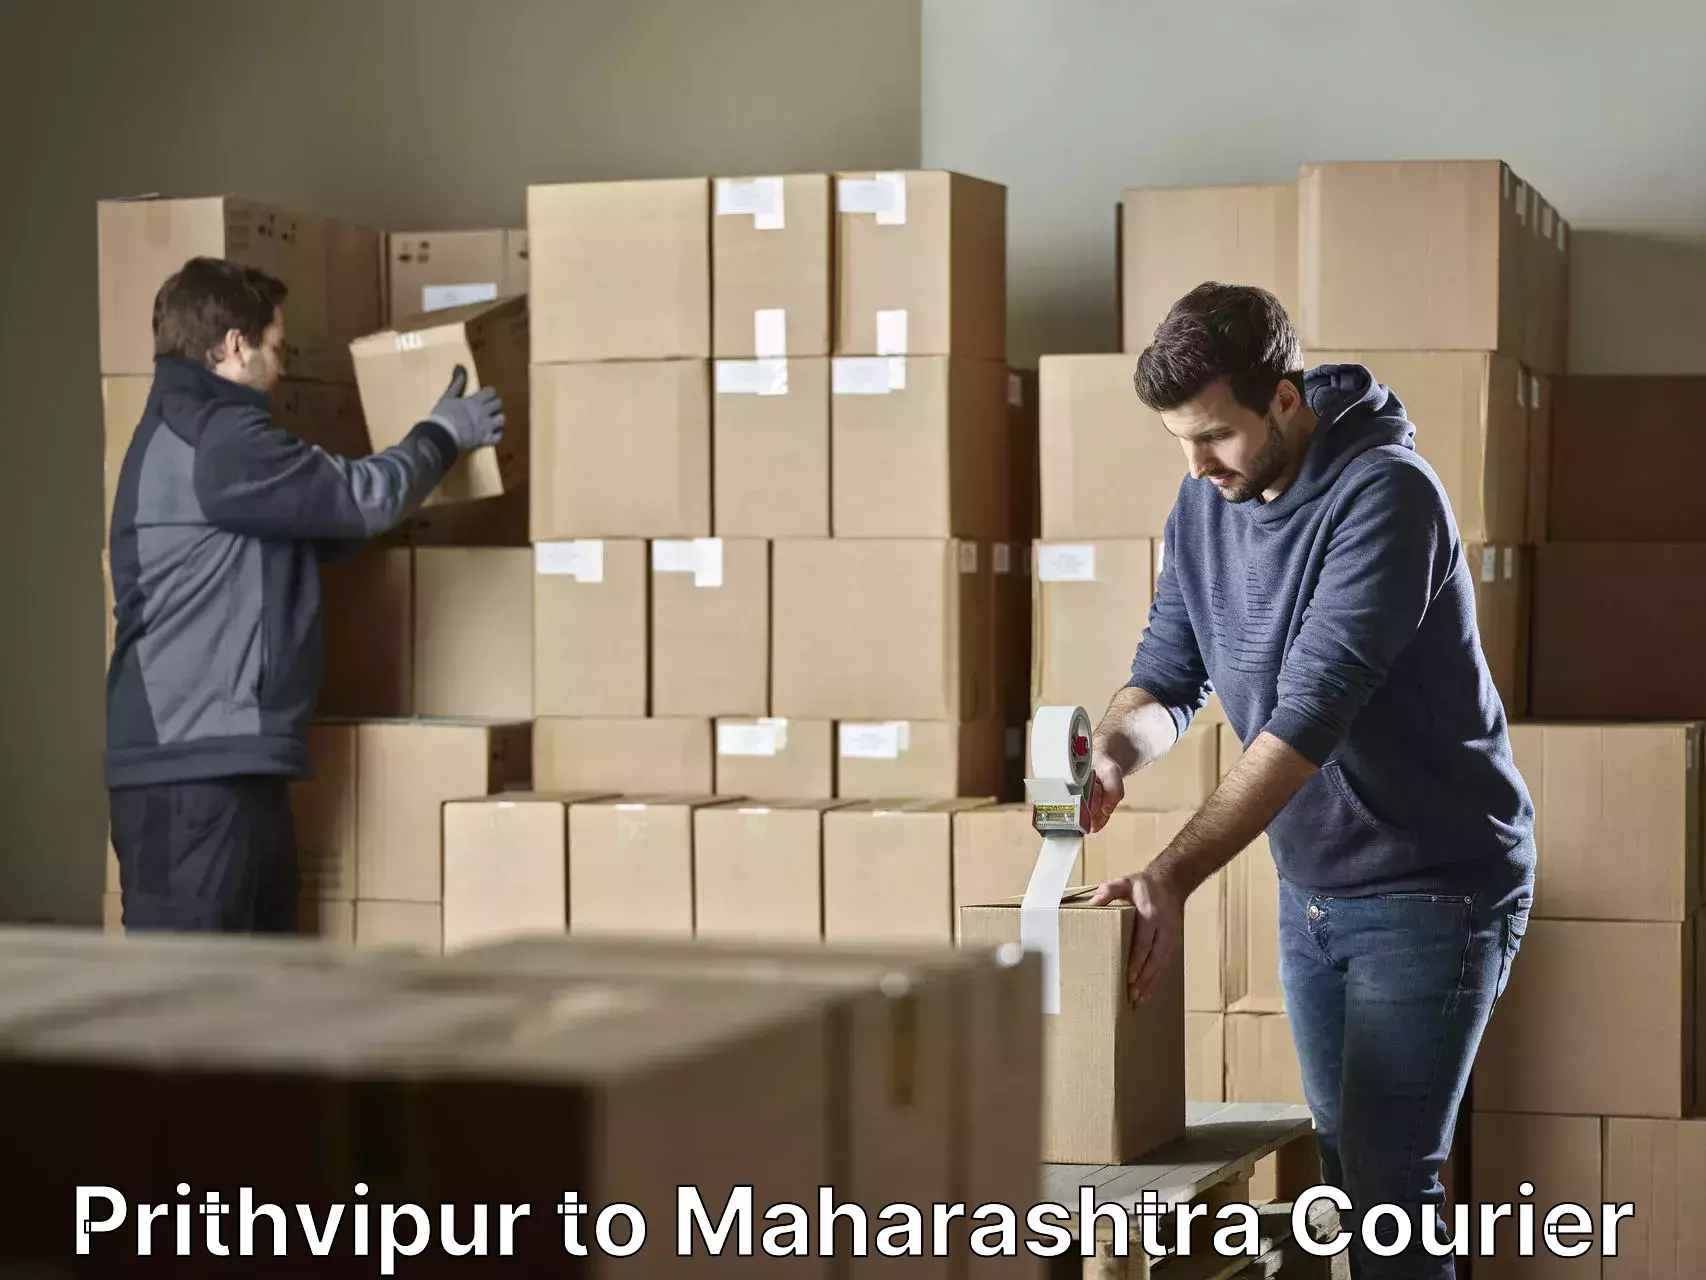 Furniture relocation experts Prithvipur to Maharashtra